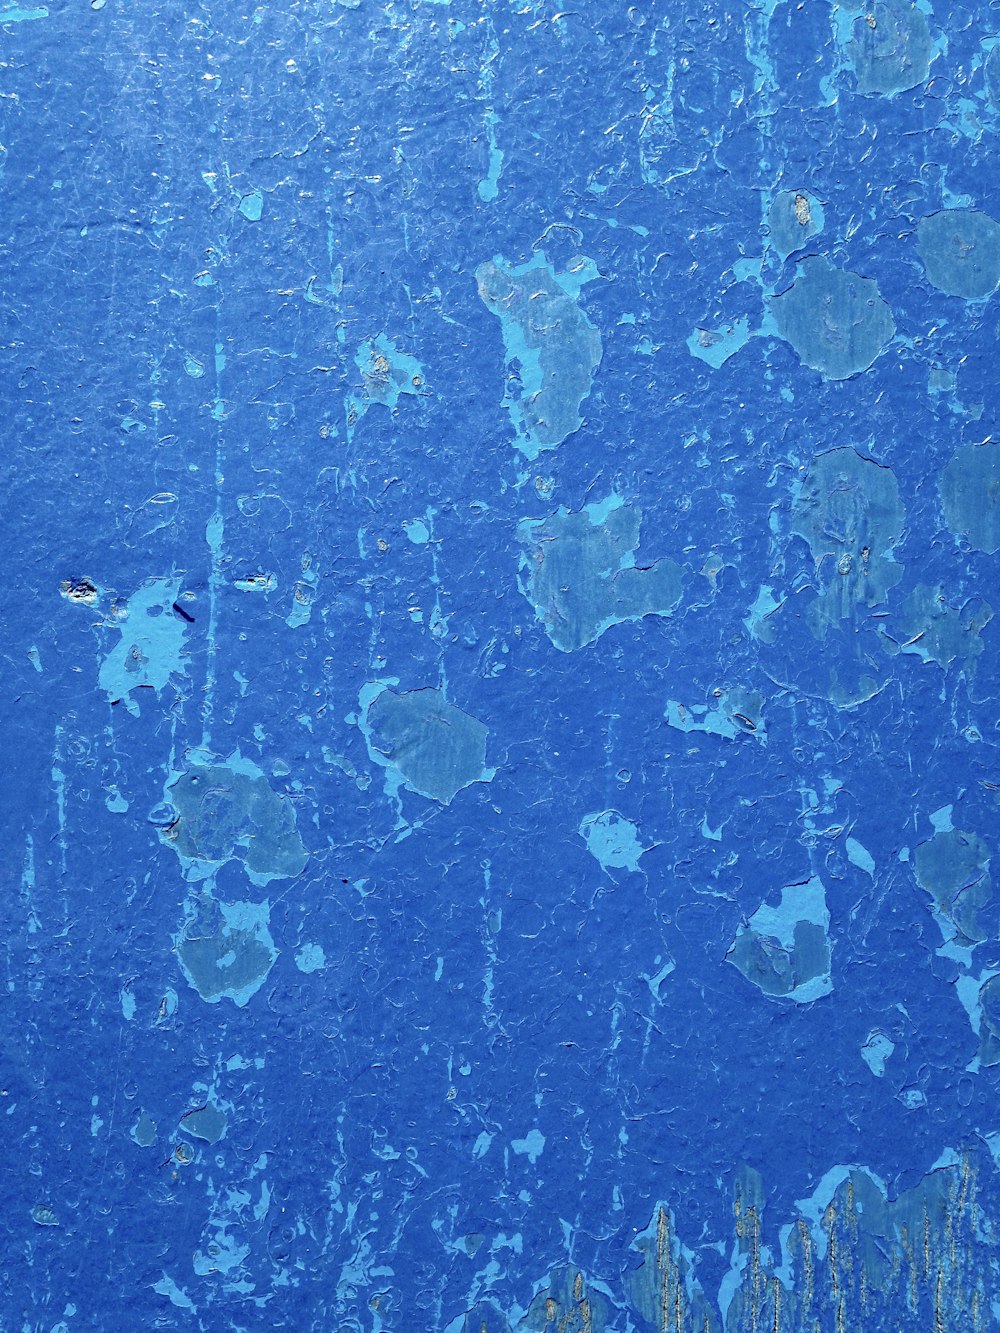 塗装されたような青い壁のイメージ